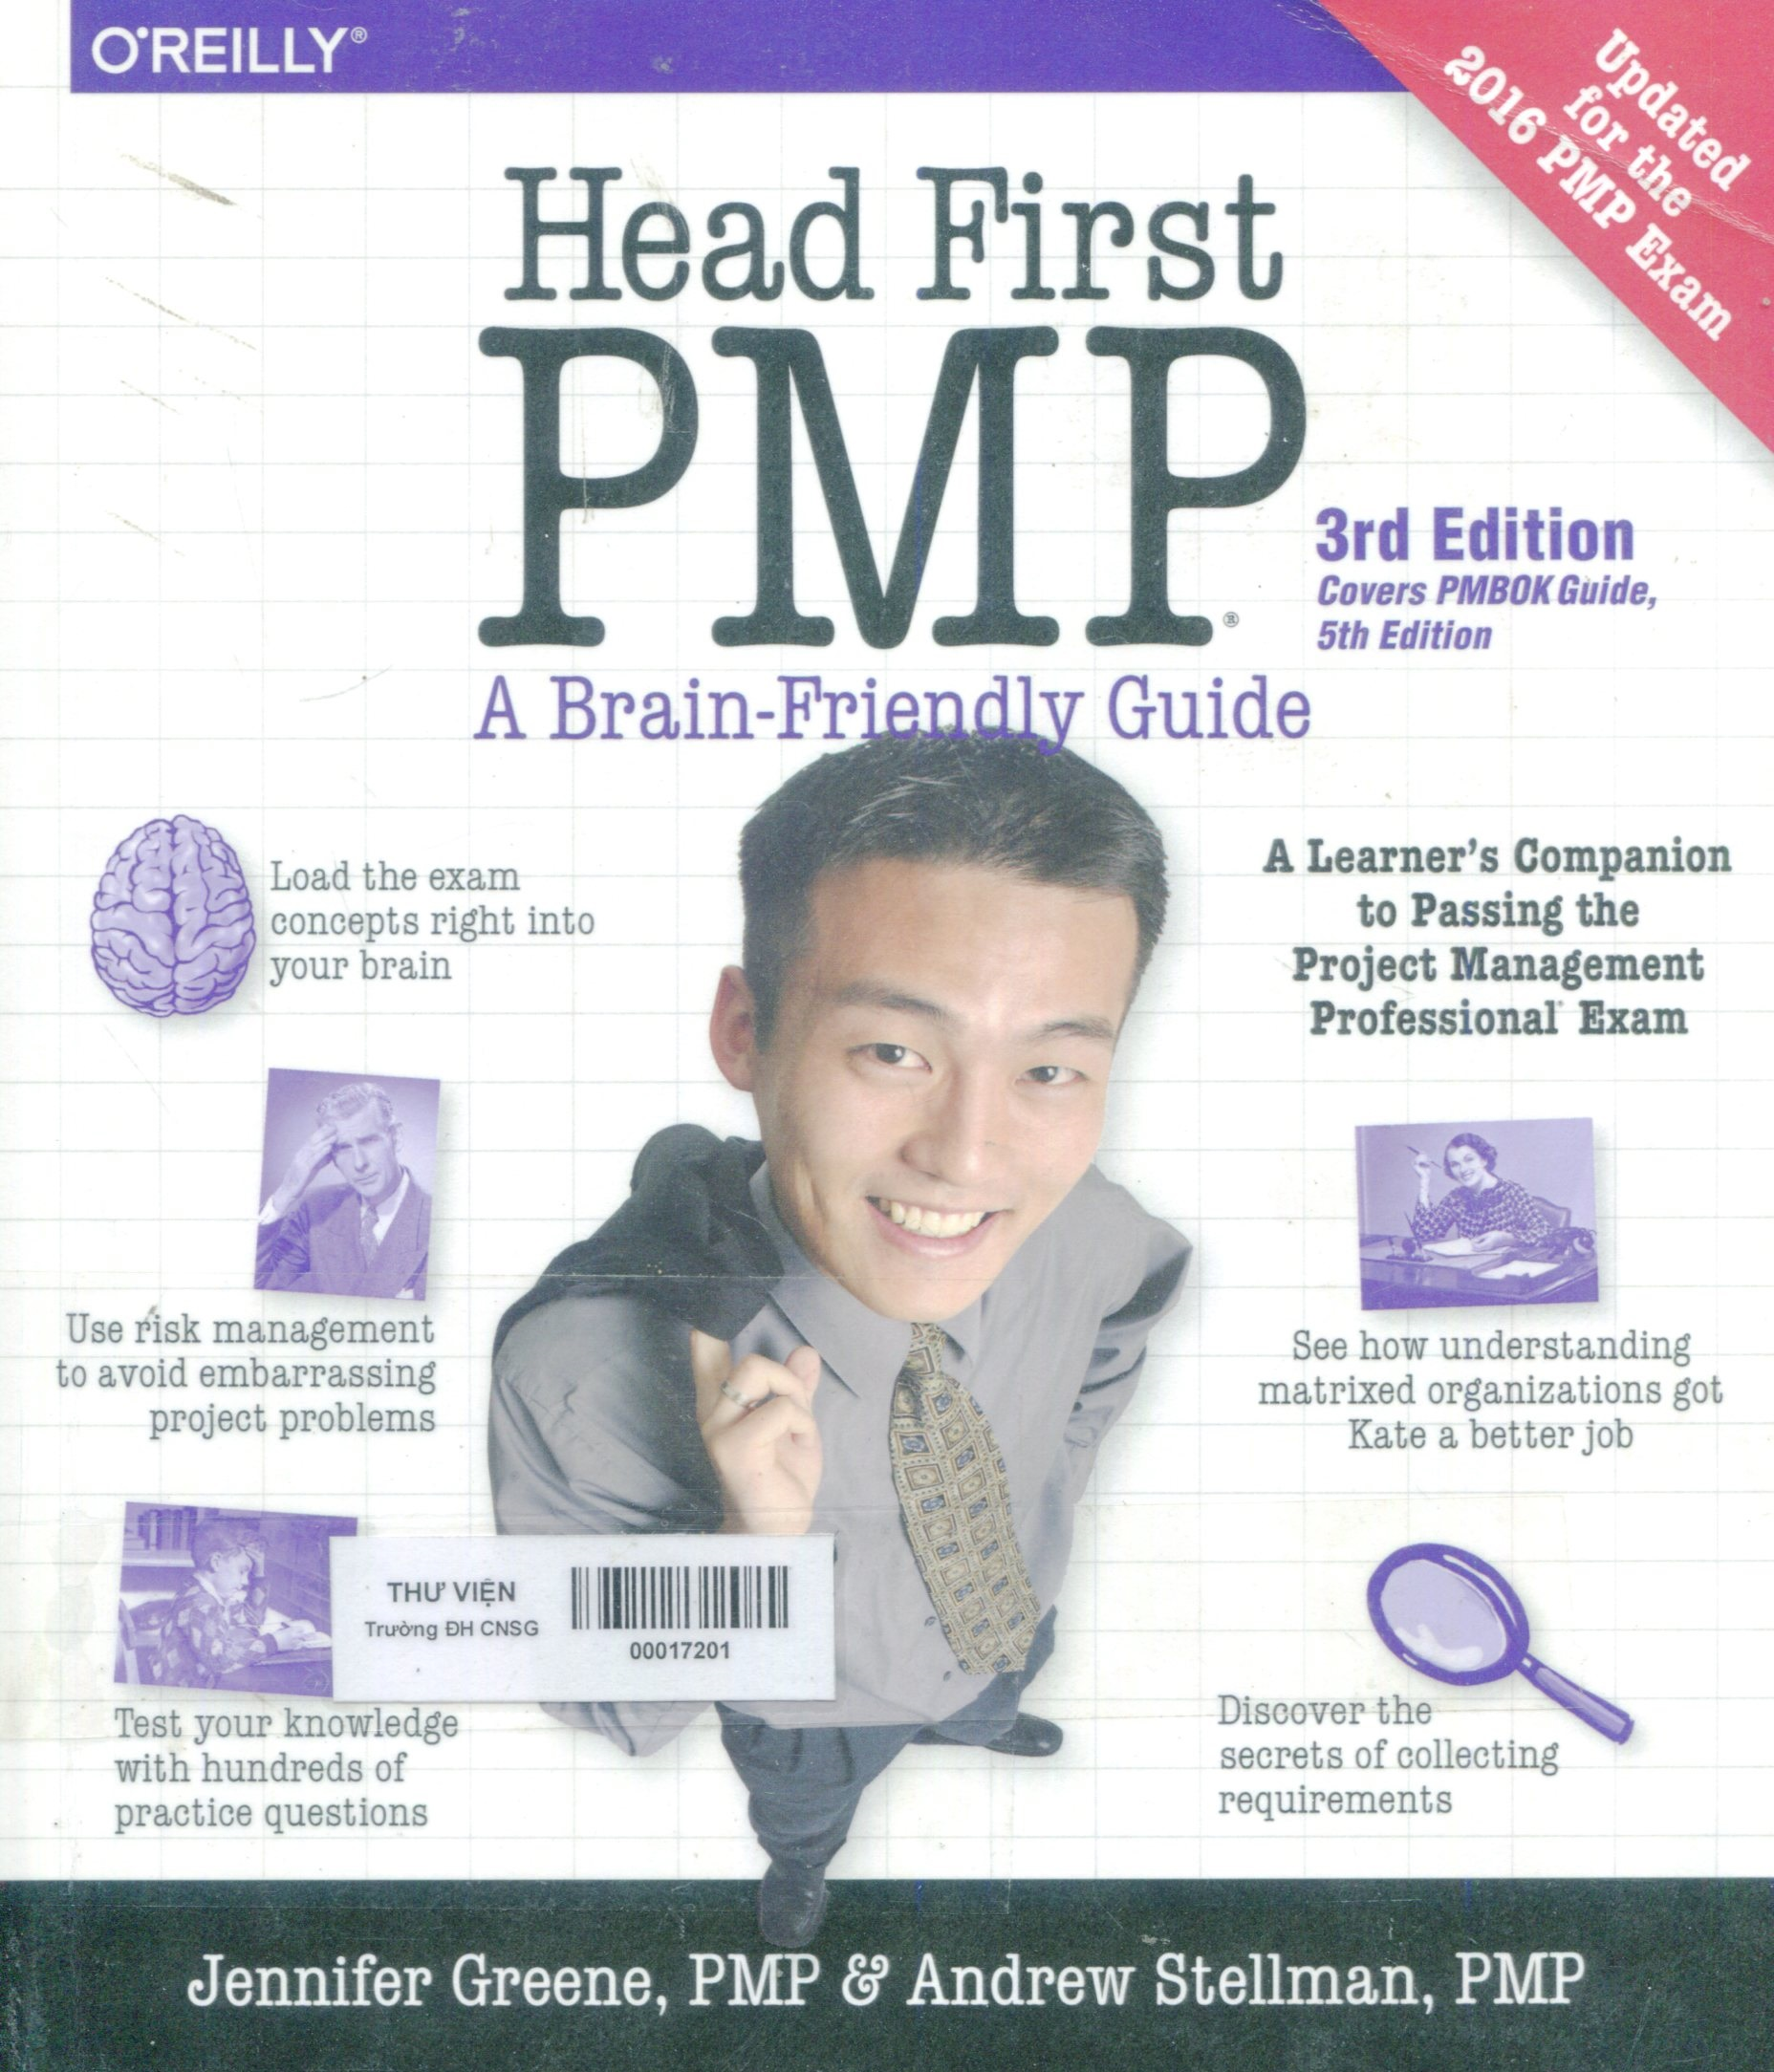 Head first PMP